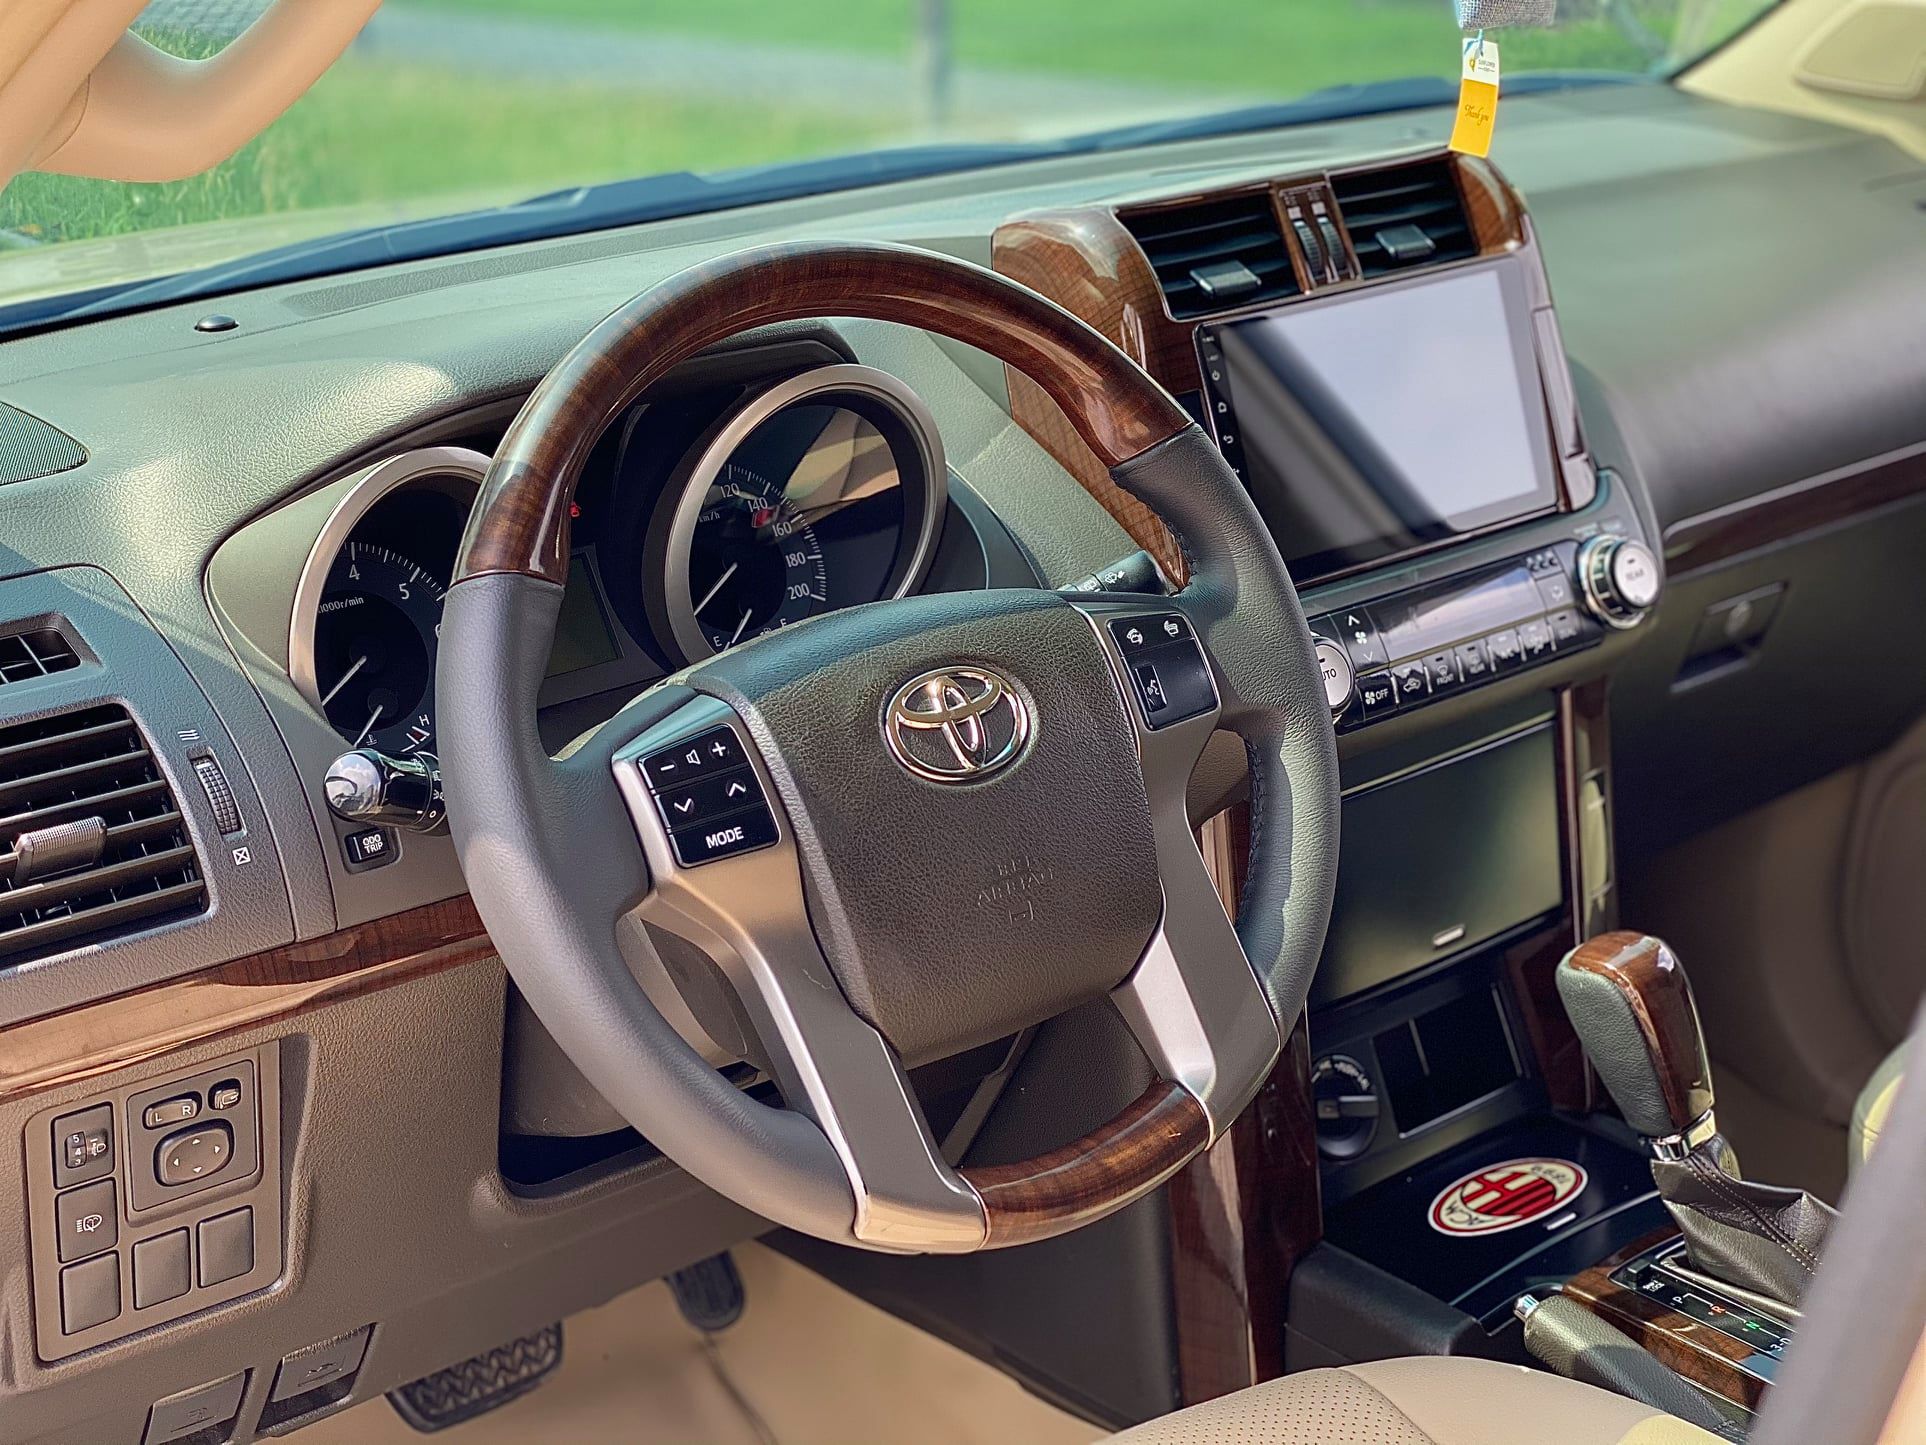 Toyota Land Cruiser Prado đời cũ rao bán gần nửa tỷ đồng